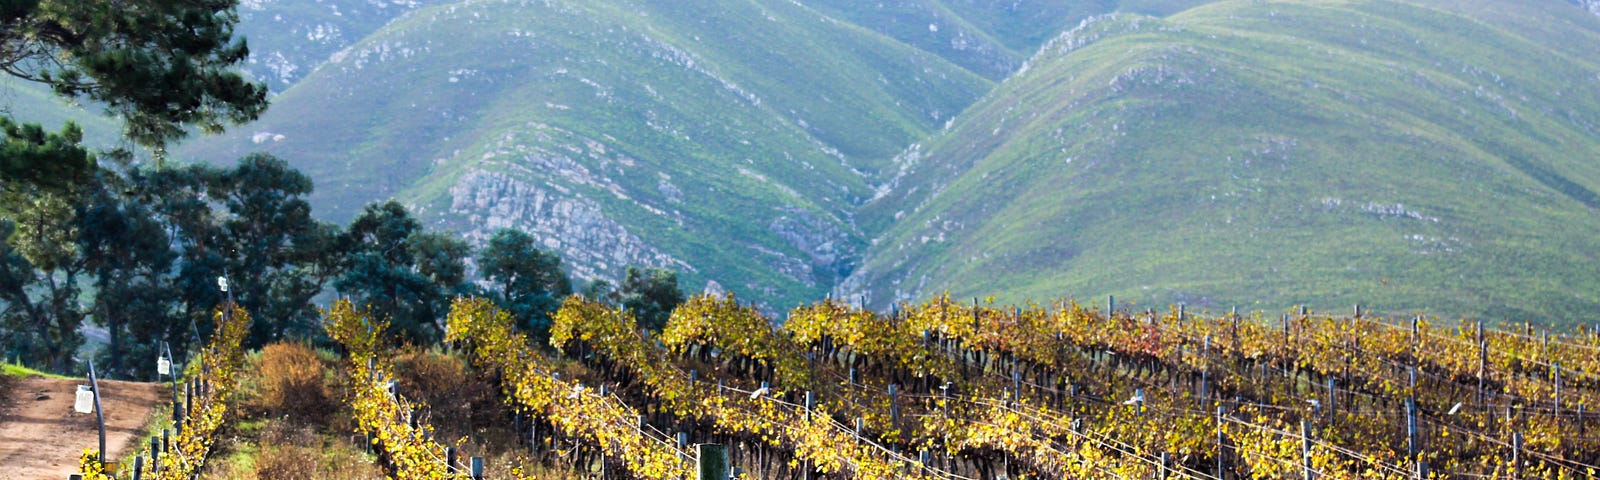 Photo of Hermanus vineyard by Devon Janse van Rensburg on Unsplash